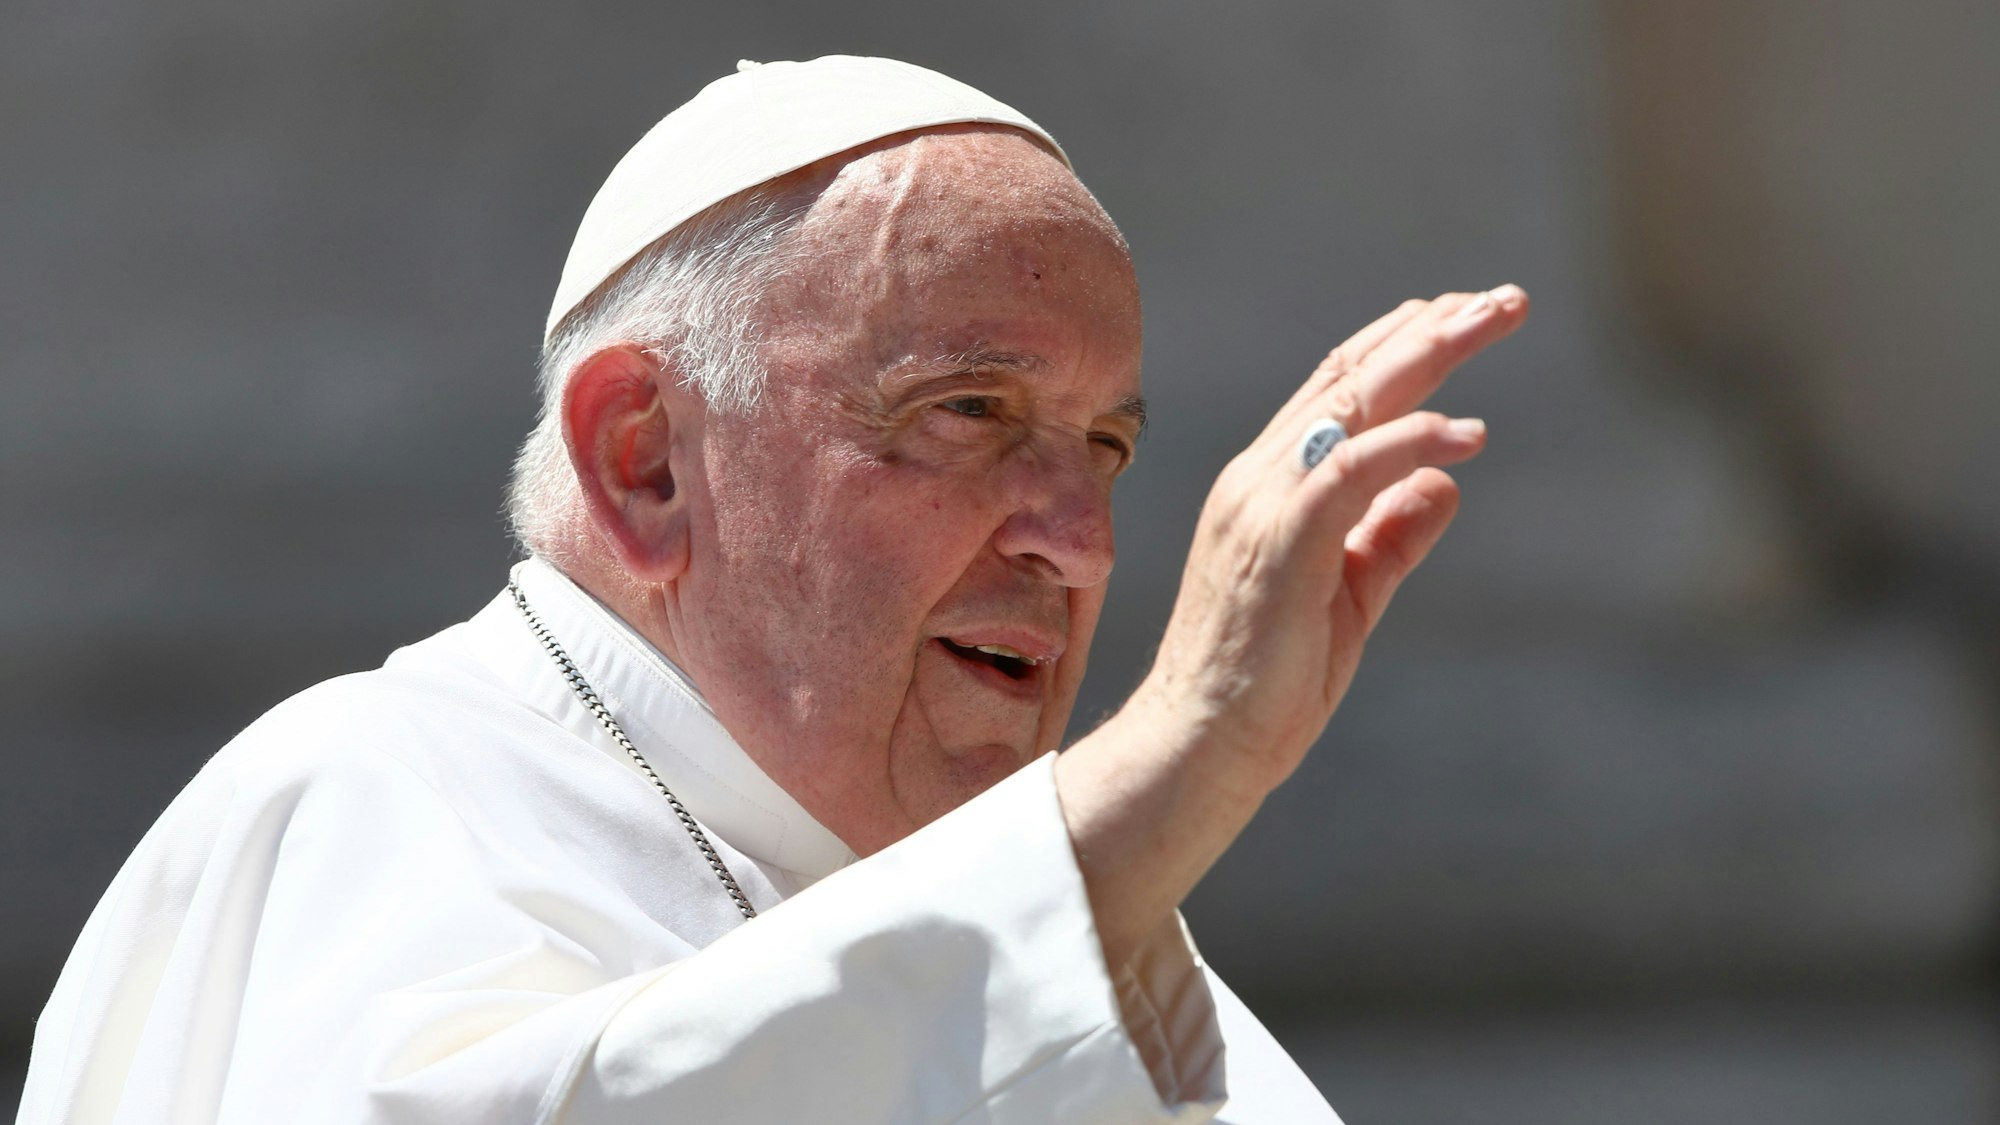 Papst Franziskus hat während seiner wöchentlichen Generalaudienz auf dem Petersplatz die rechte Hand zum Segen erhoben. Er trägt eine weiße Soutane und eine weiße Kappe, genannt Pileolus.